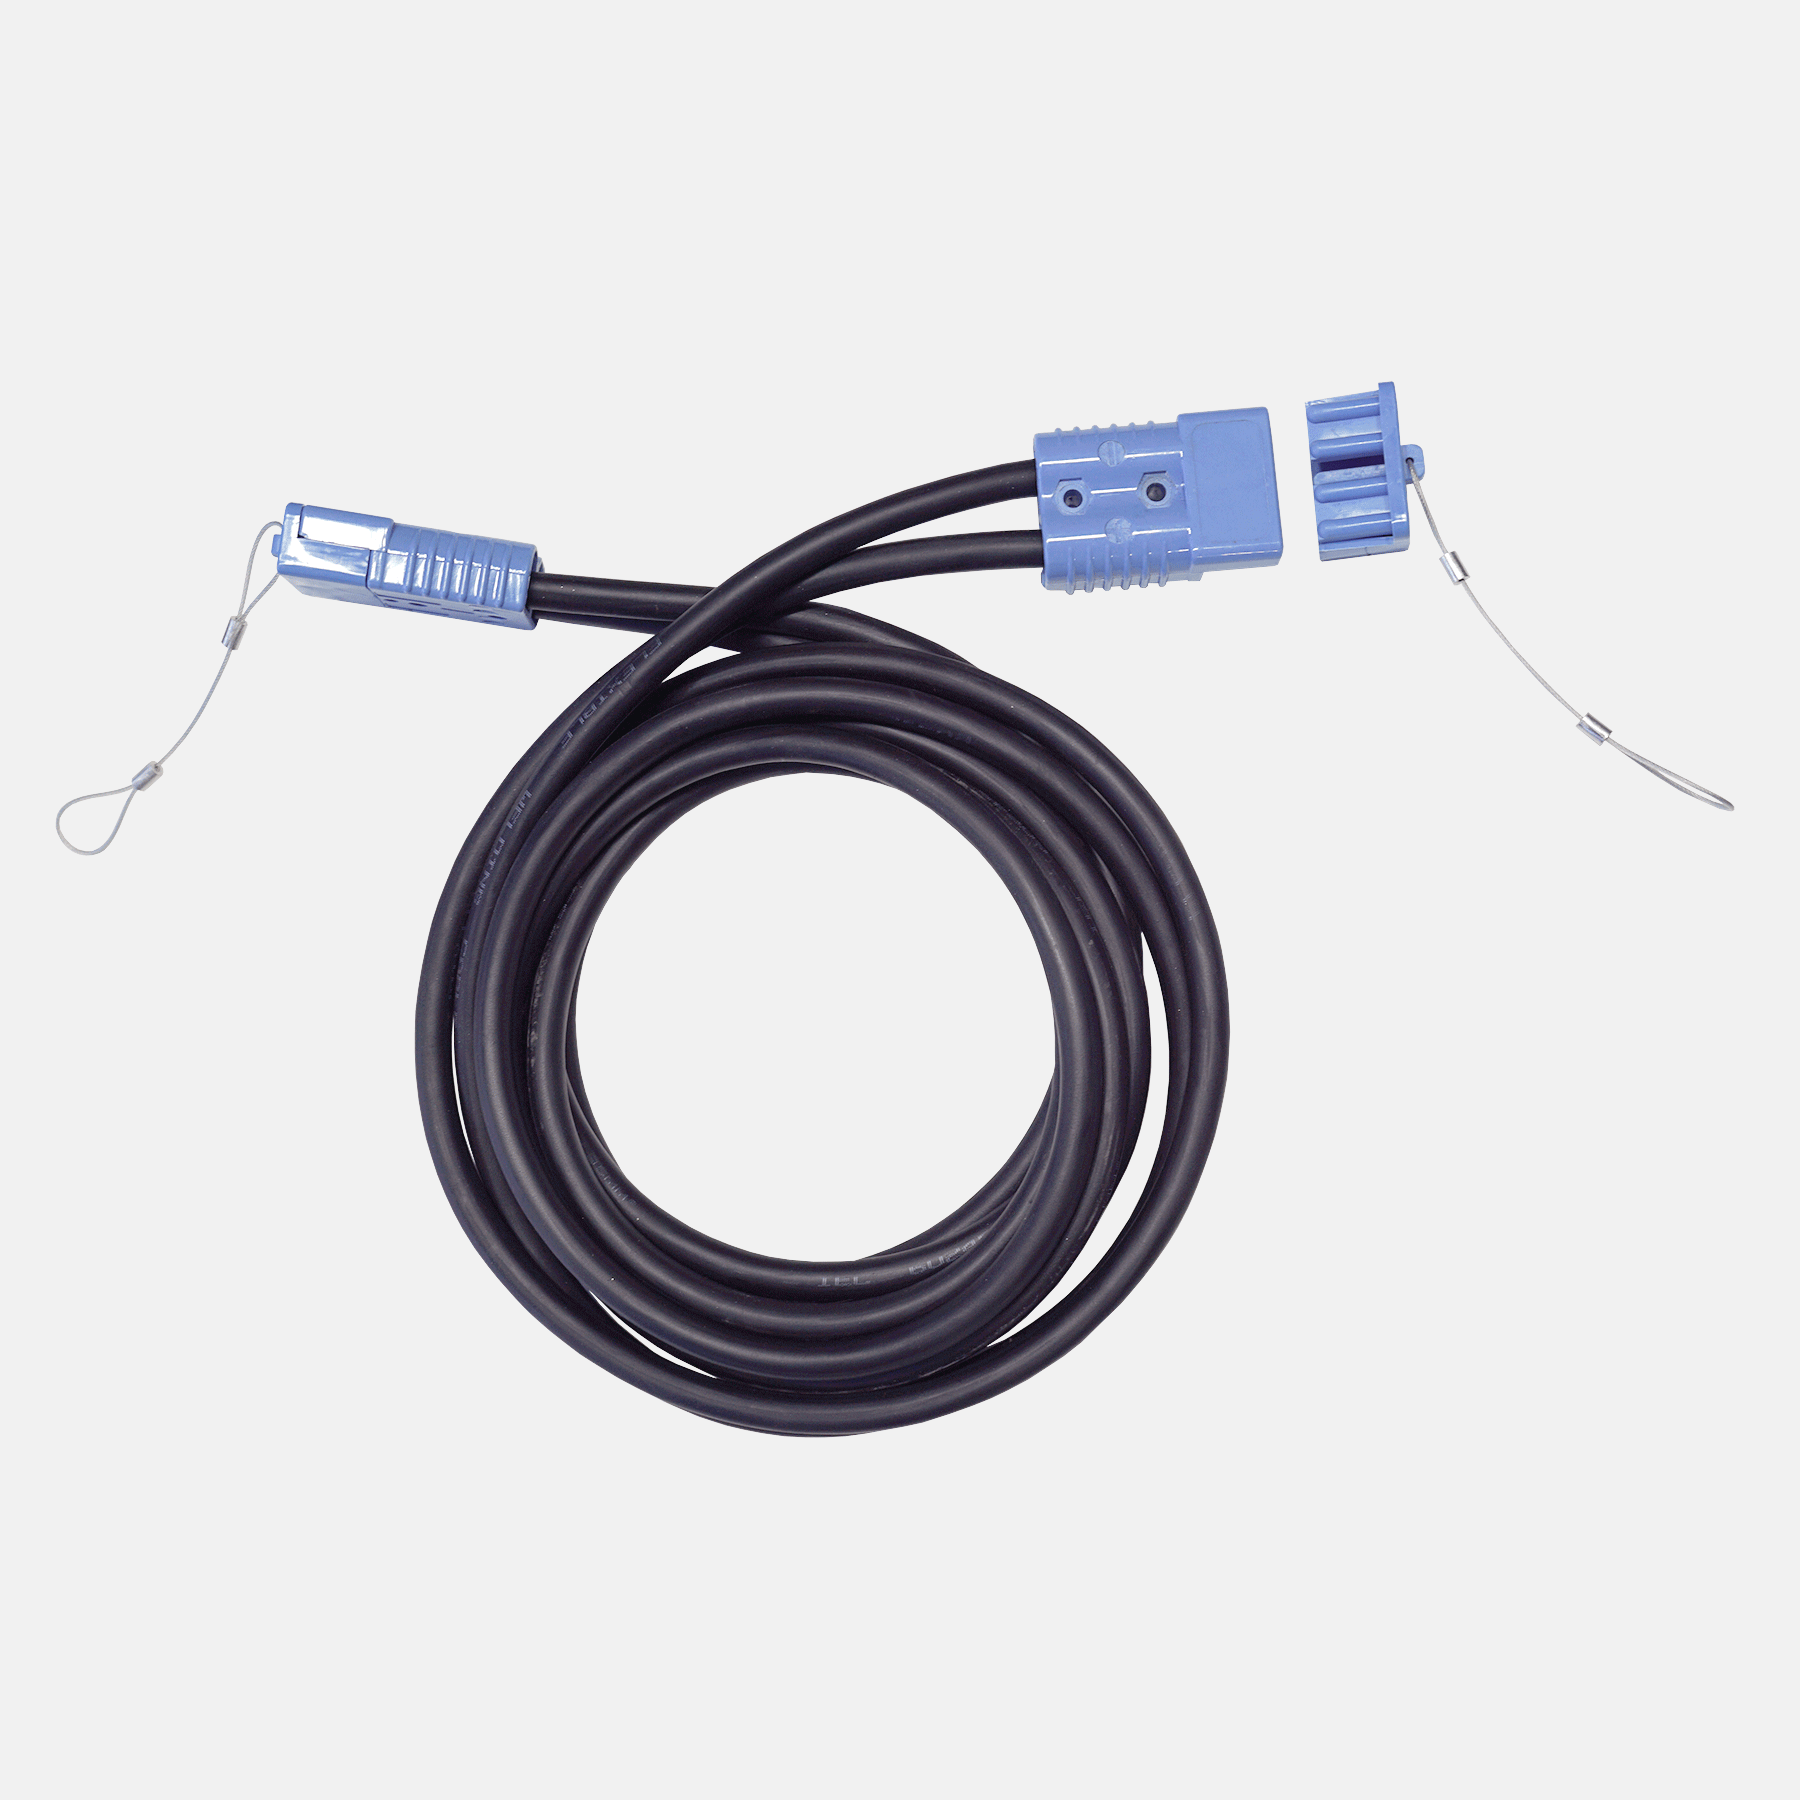 Seilwinden Kabelsatz Verlängerung 3m mobil mit Stecker